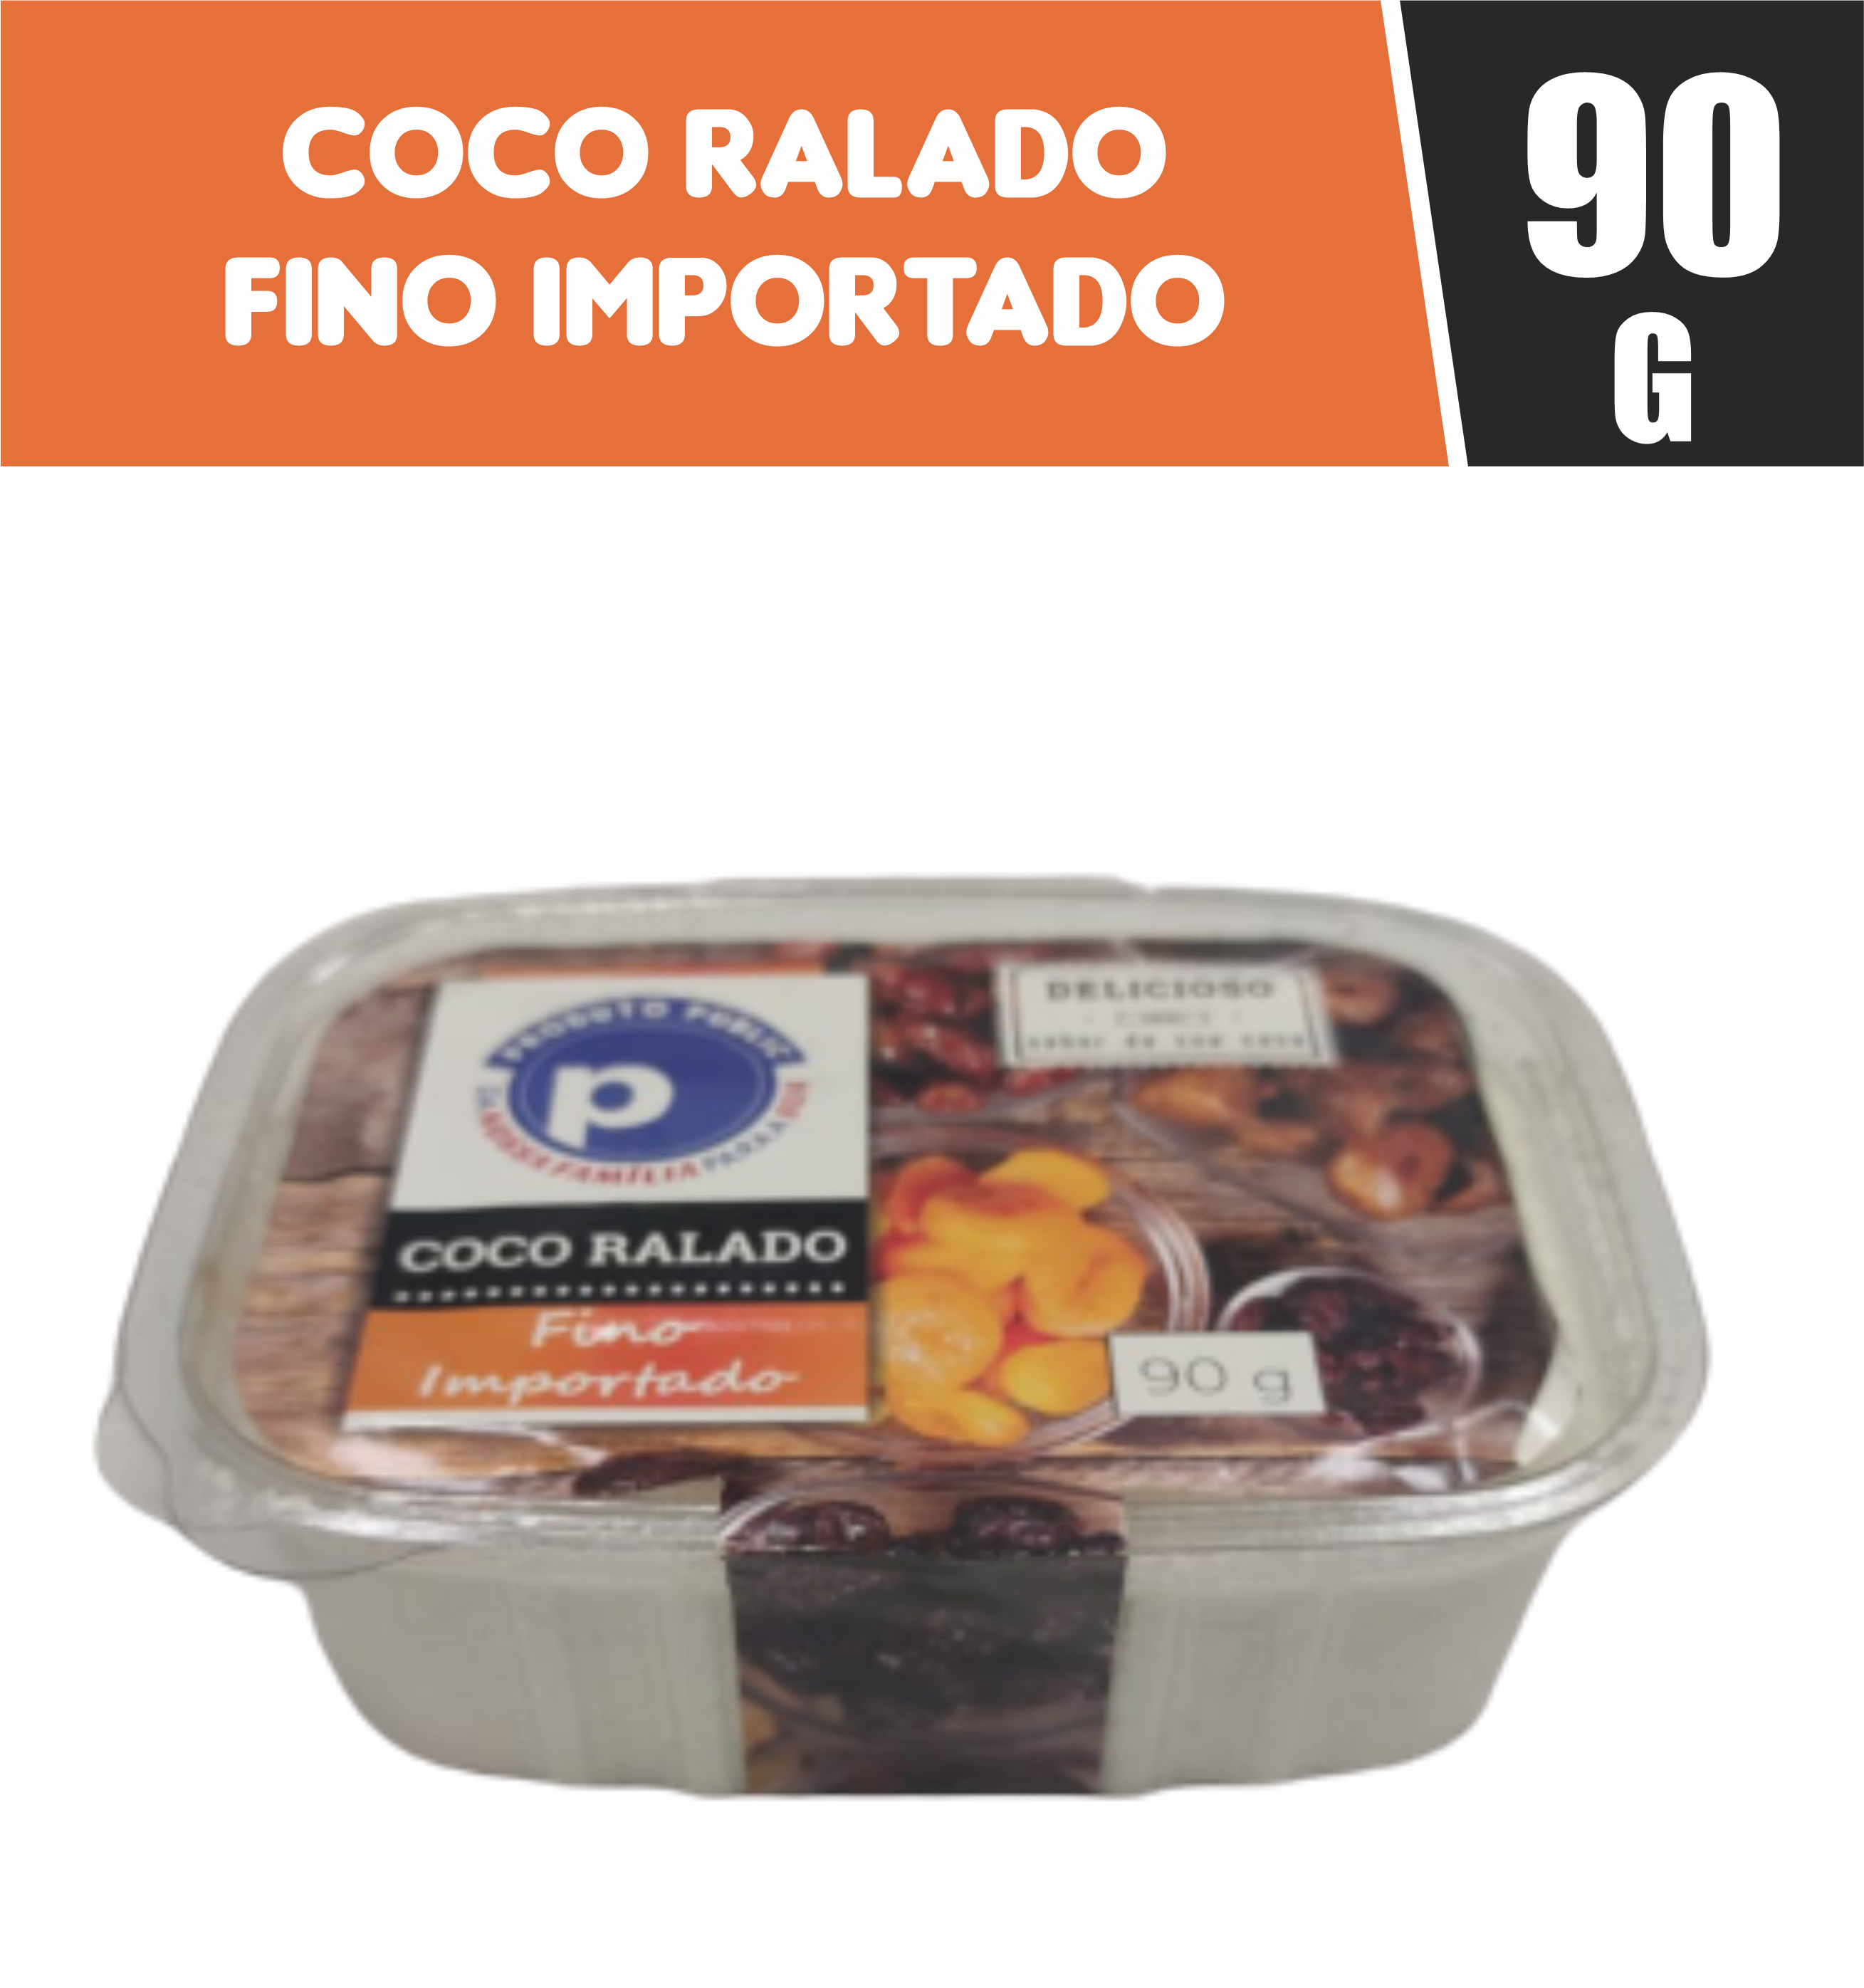 7898653353504 - COCO RALADO FINO IMP. PUBLIC 90G